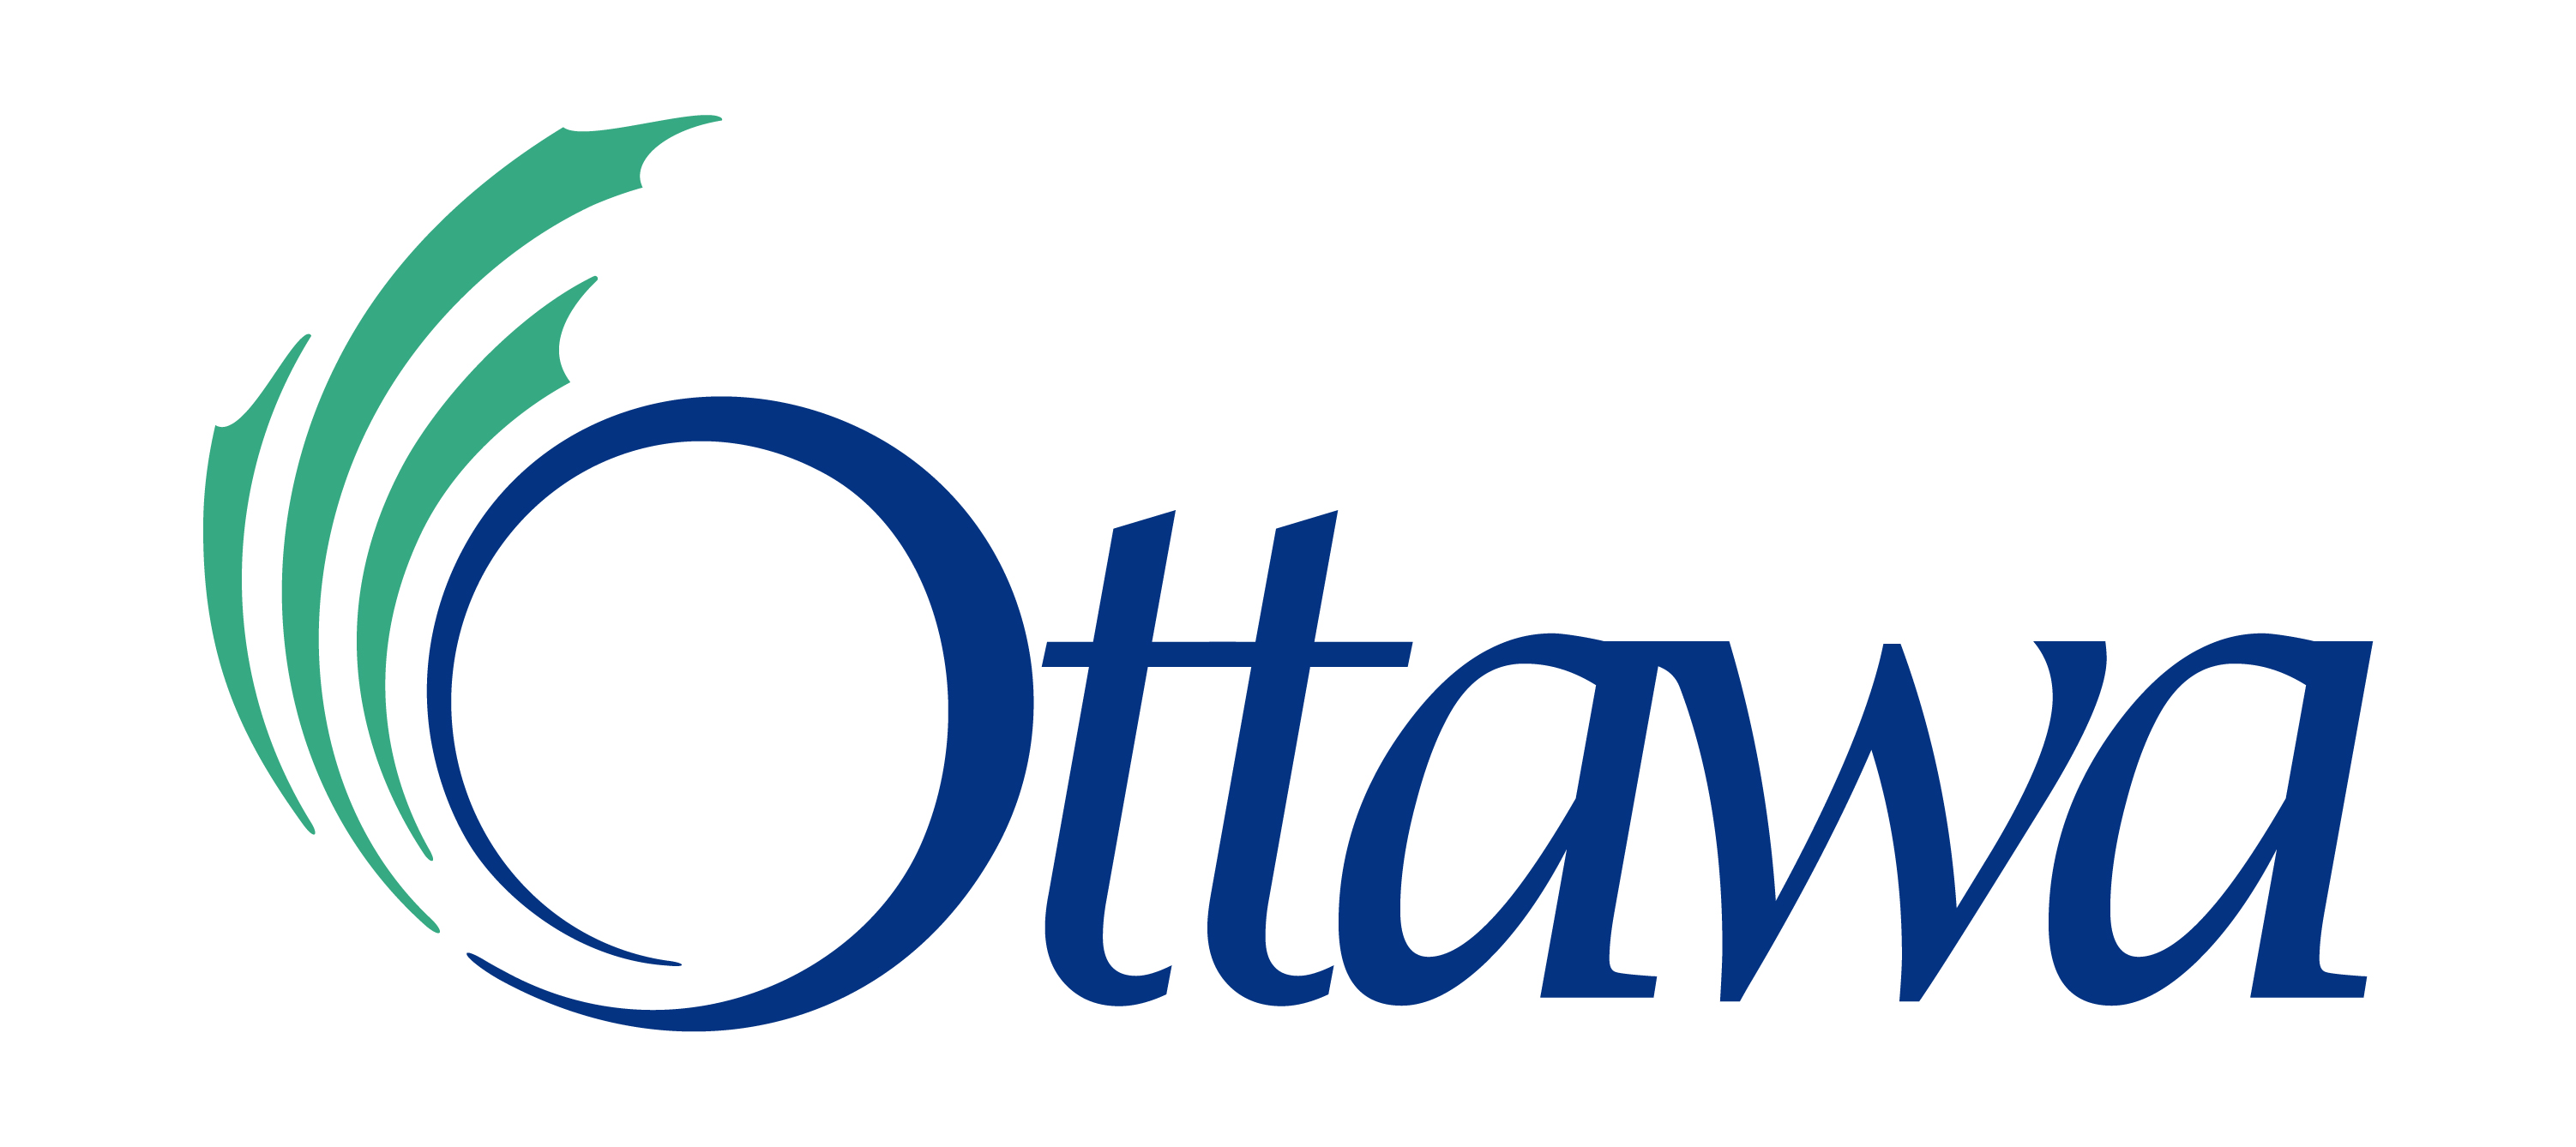 Image result for logo for ottawa ontario